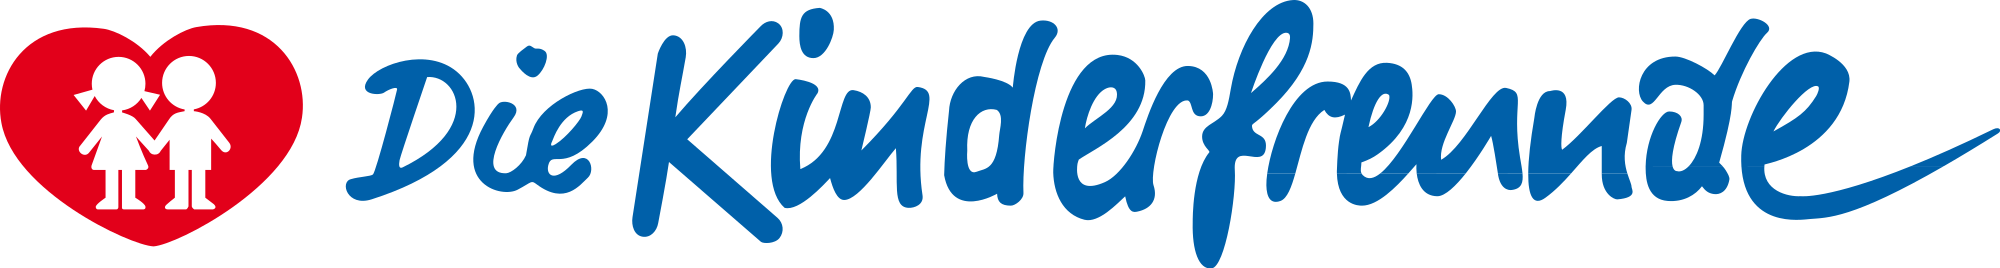 Kinderfreunde_logo.svg.png